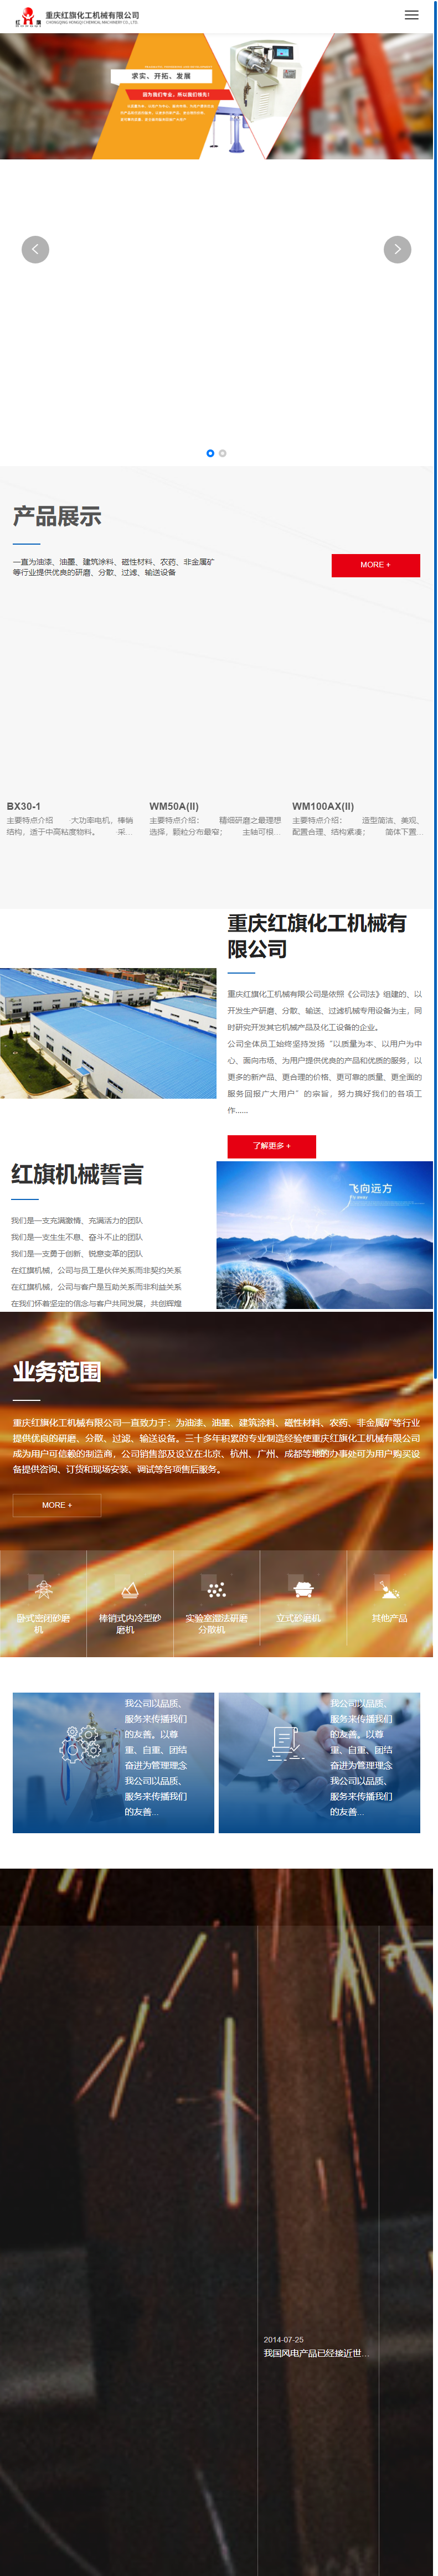 重庆红旗化工机械有限公司网站案例